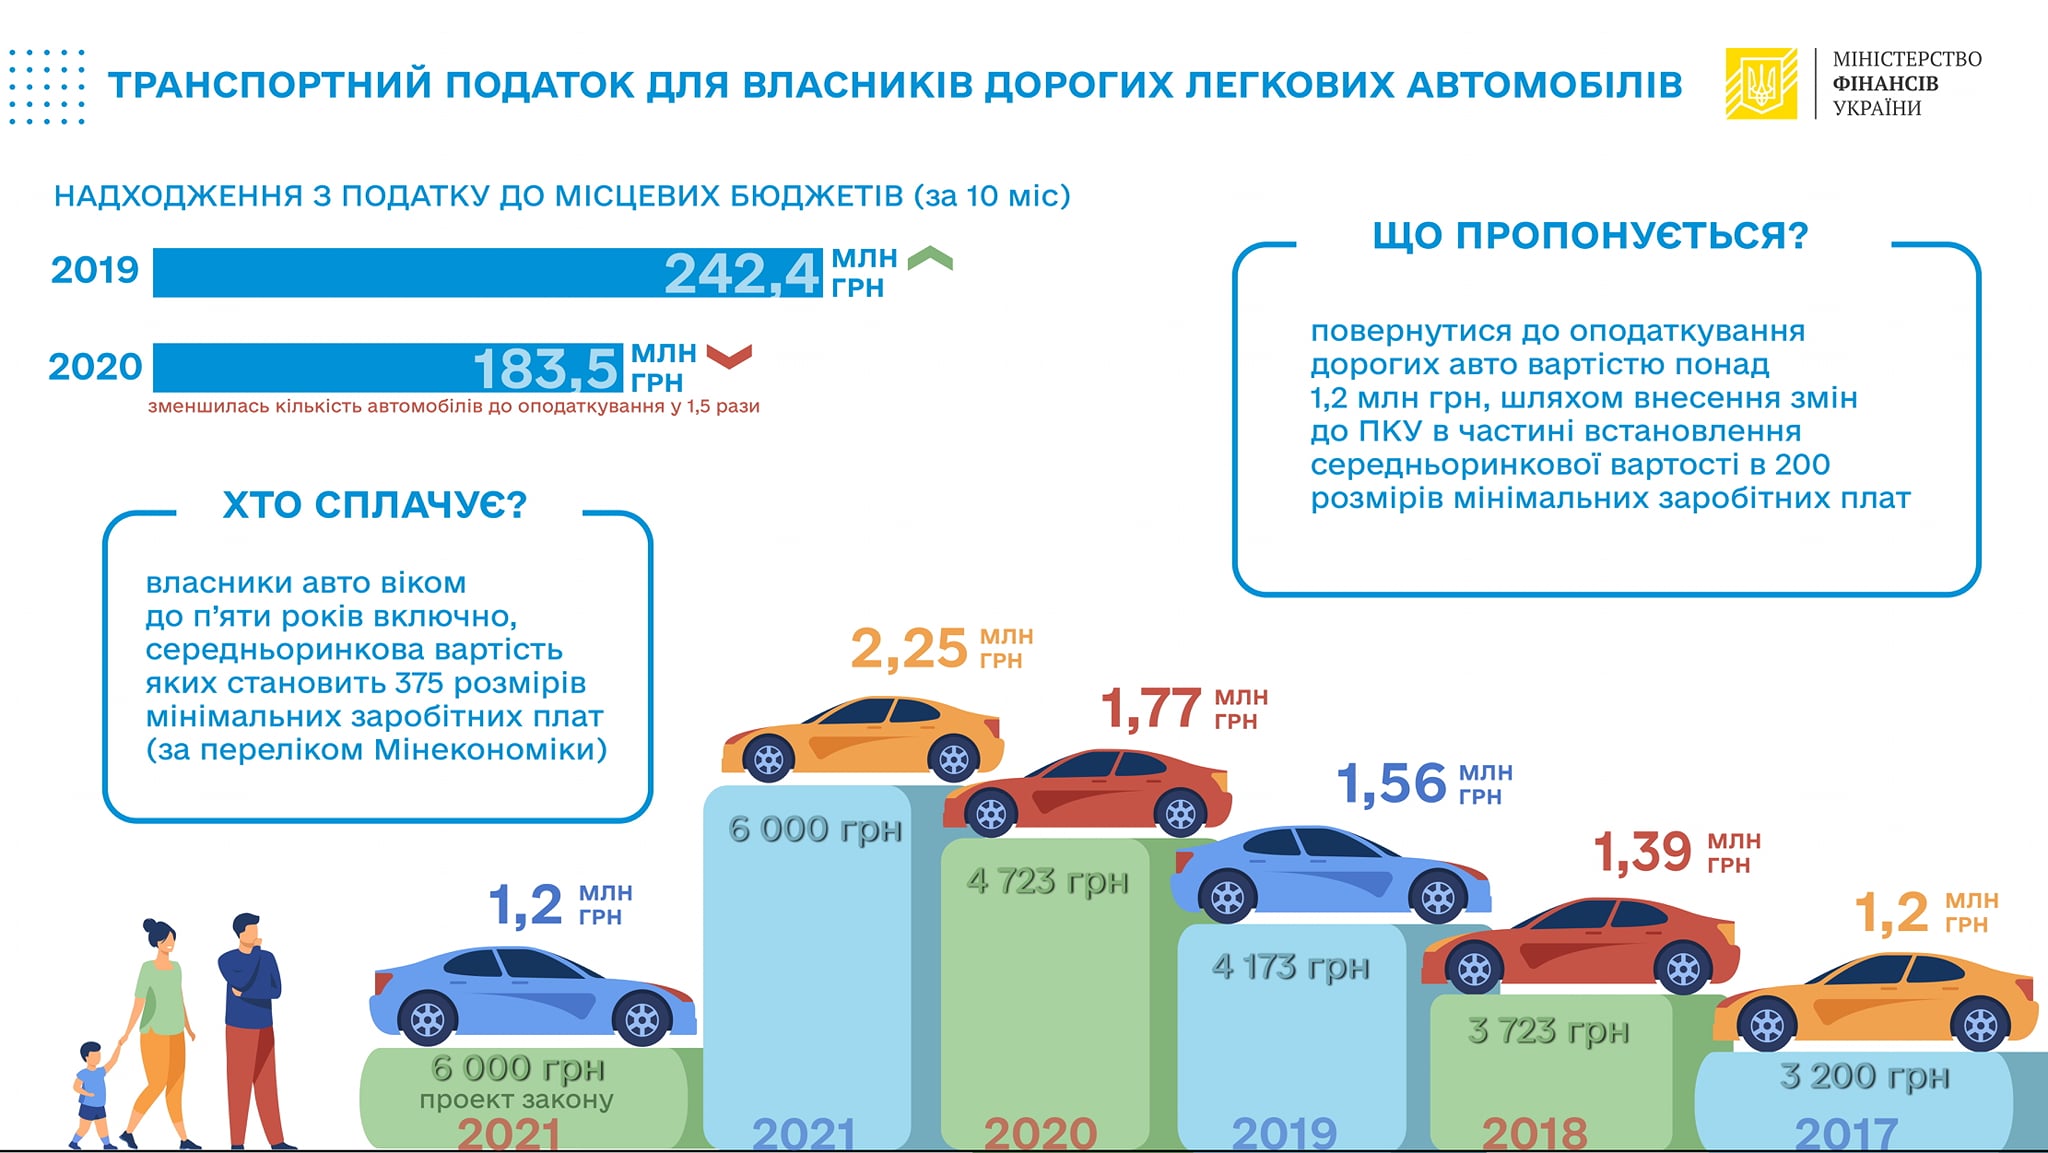 Инфографика о транспортном налоге